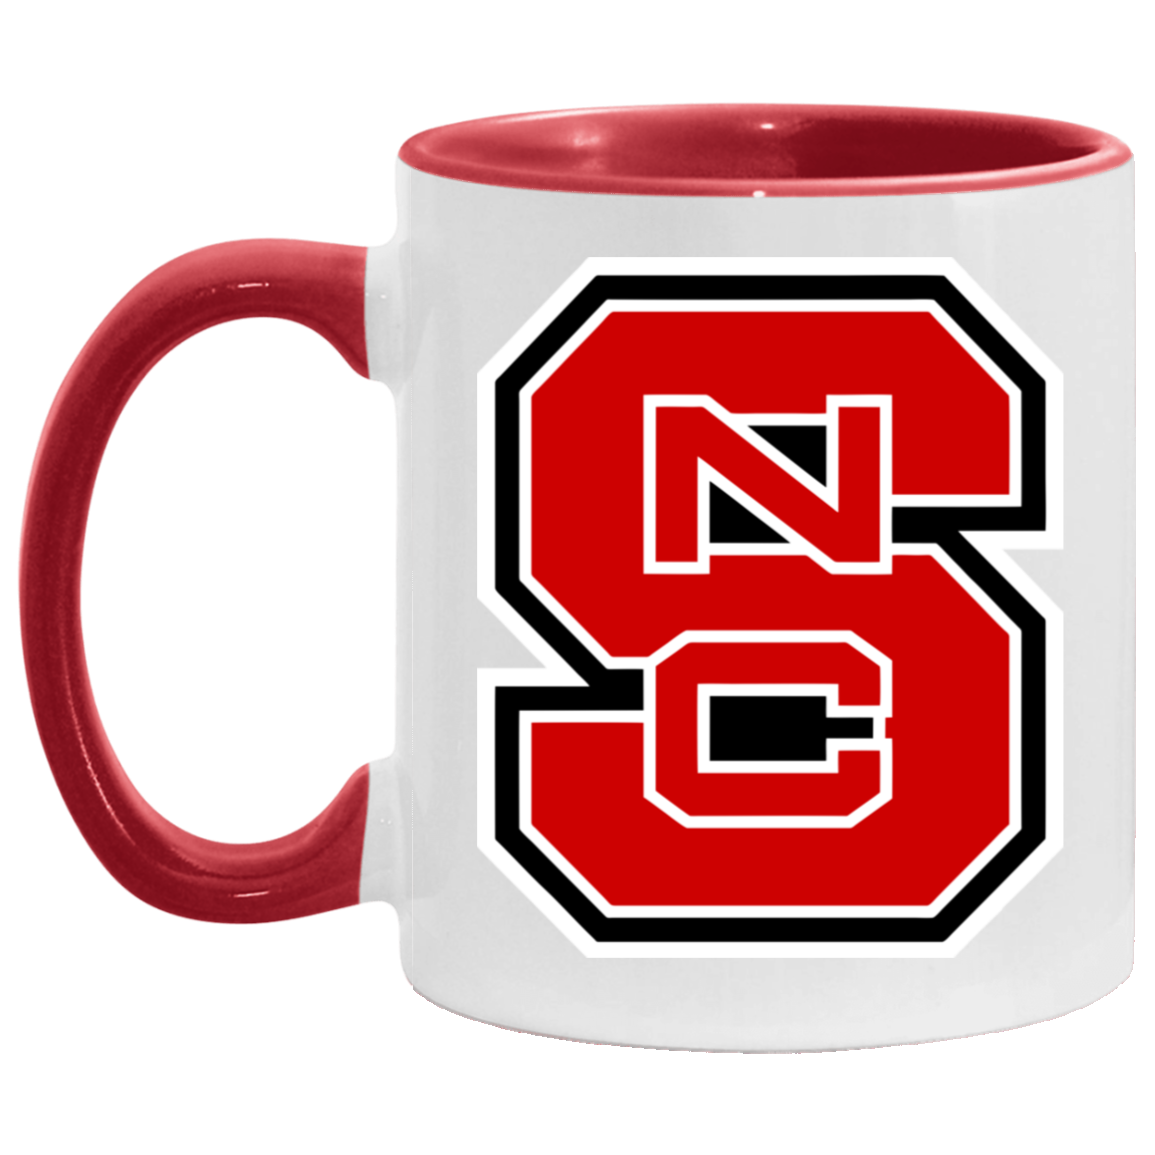 NC State Mug